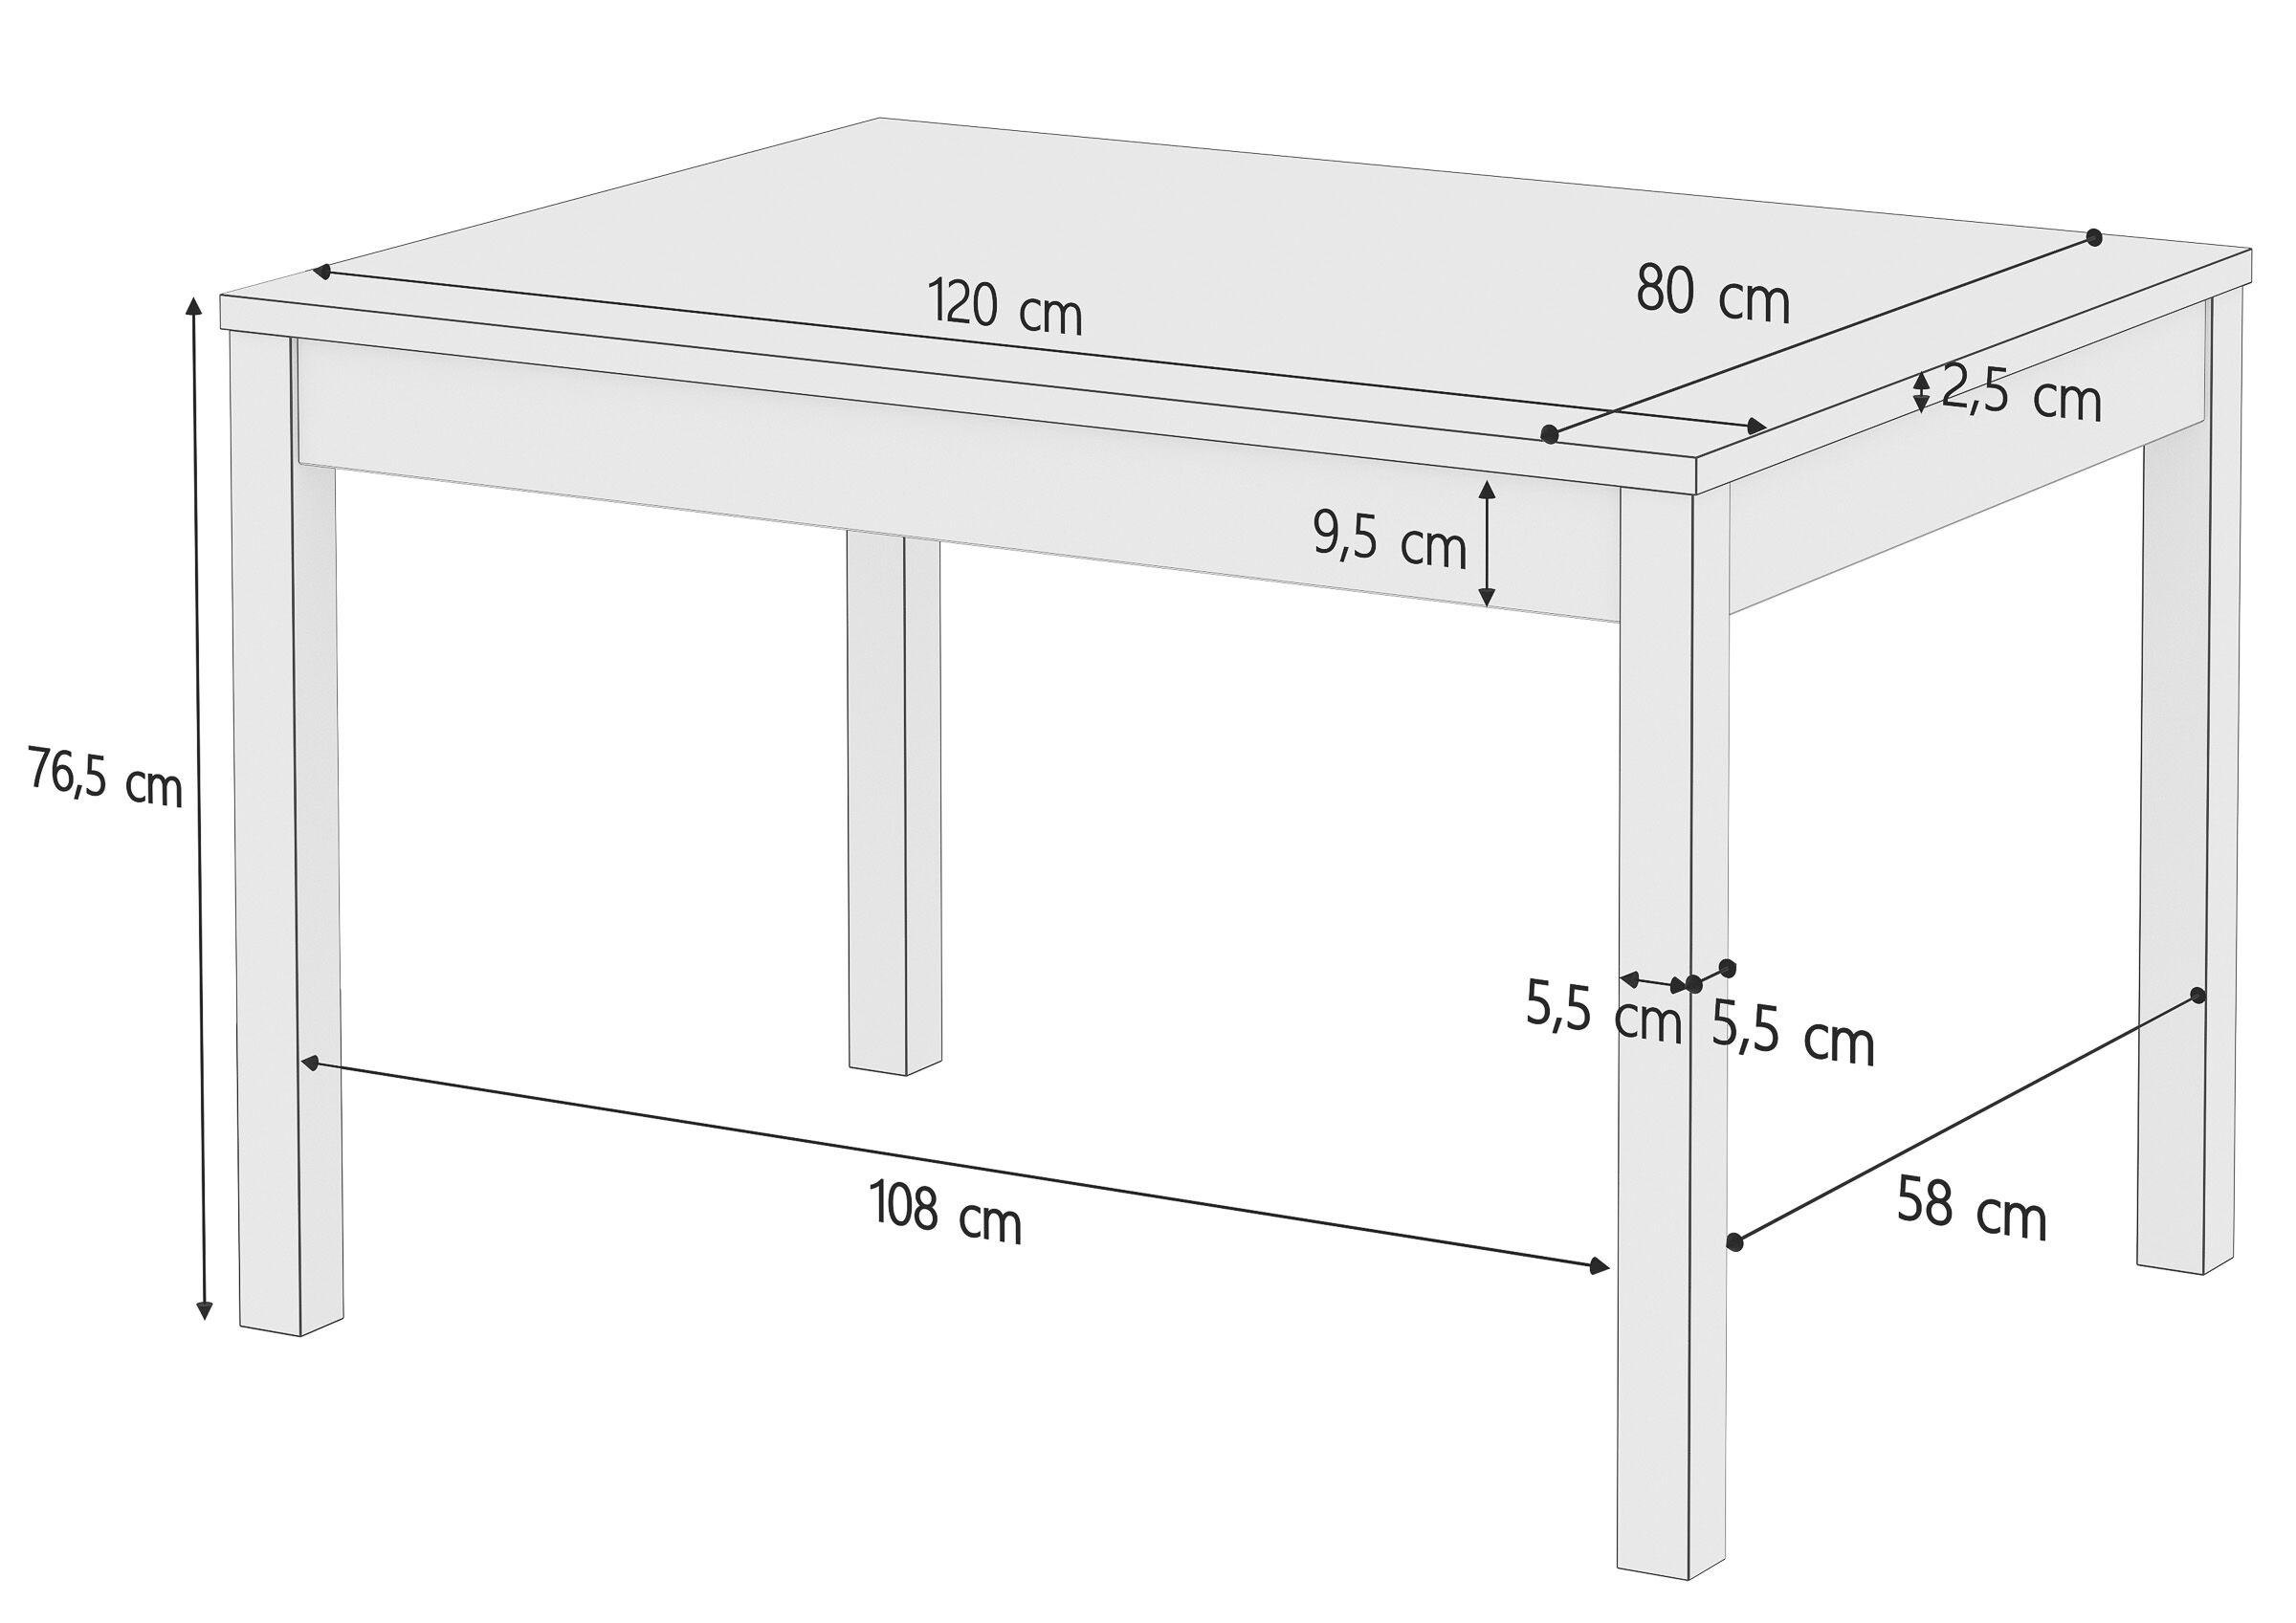 Stabiler Esszimmertisch aus massiver Kiefer, waschweiß lackiert, 80 x 120 cm, Tischbeine Glatt, Schema mit Maße